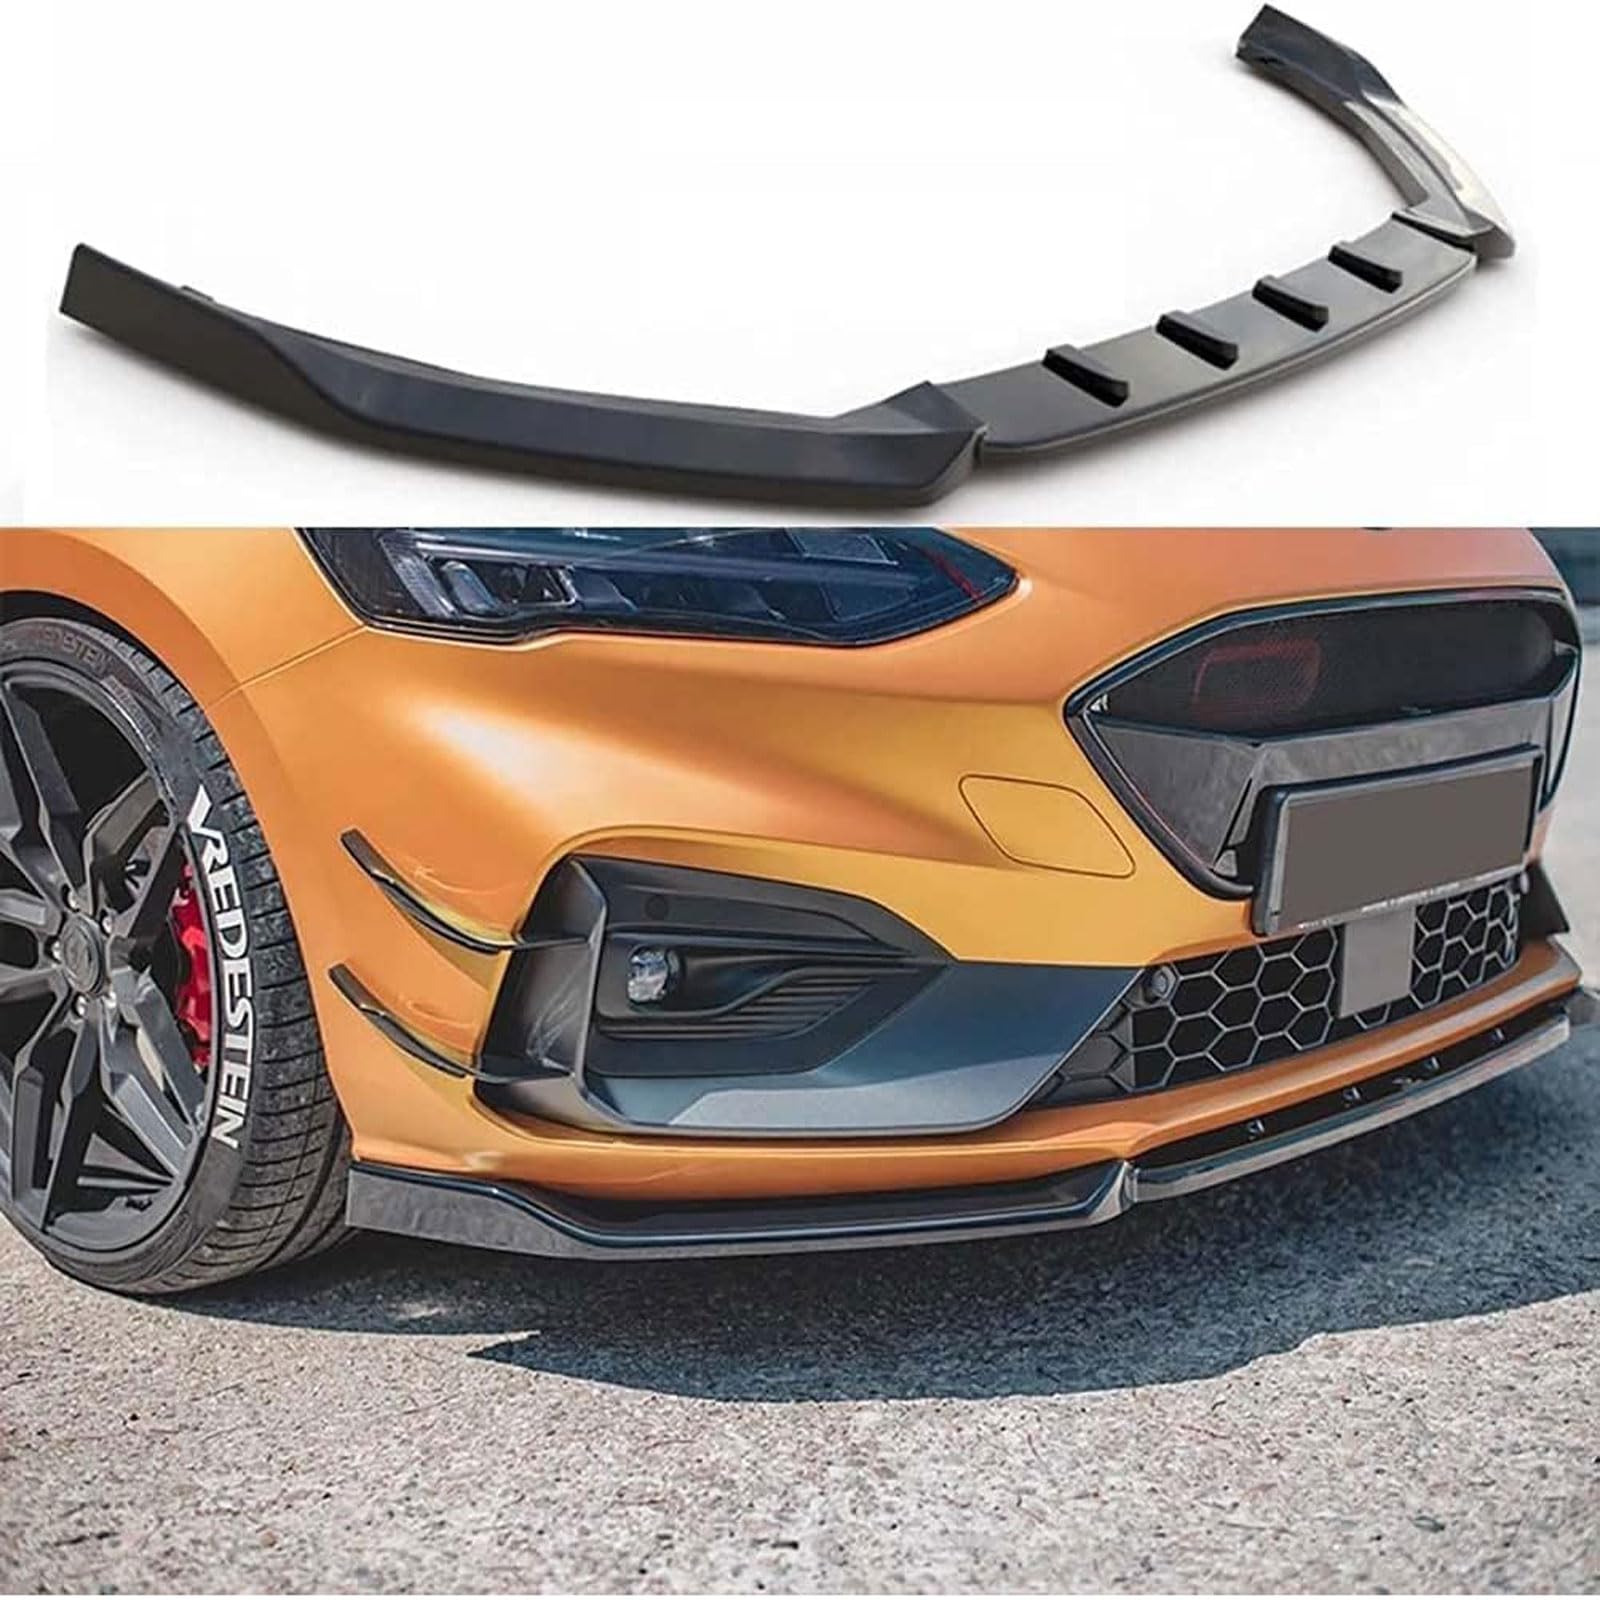 Auto Frontspoiler Lippe für Ford Focus mk4 ST 2019 2020 2021, Frontstoßstange Spoiler Splitter Diffusor Body Kit, Auto Styling Zubehör,Carbon-Fiber-Pattern von KSLREUFH